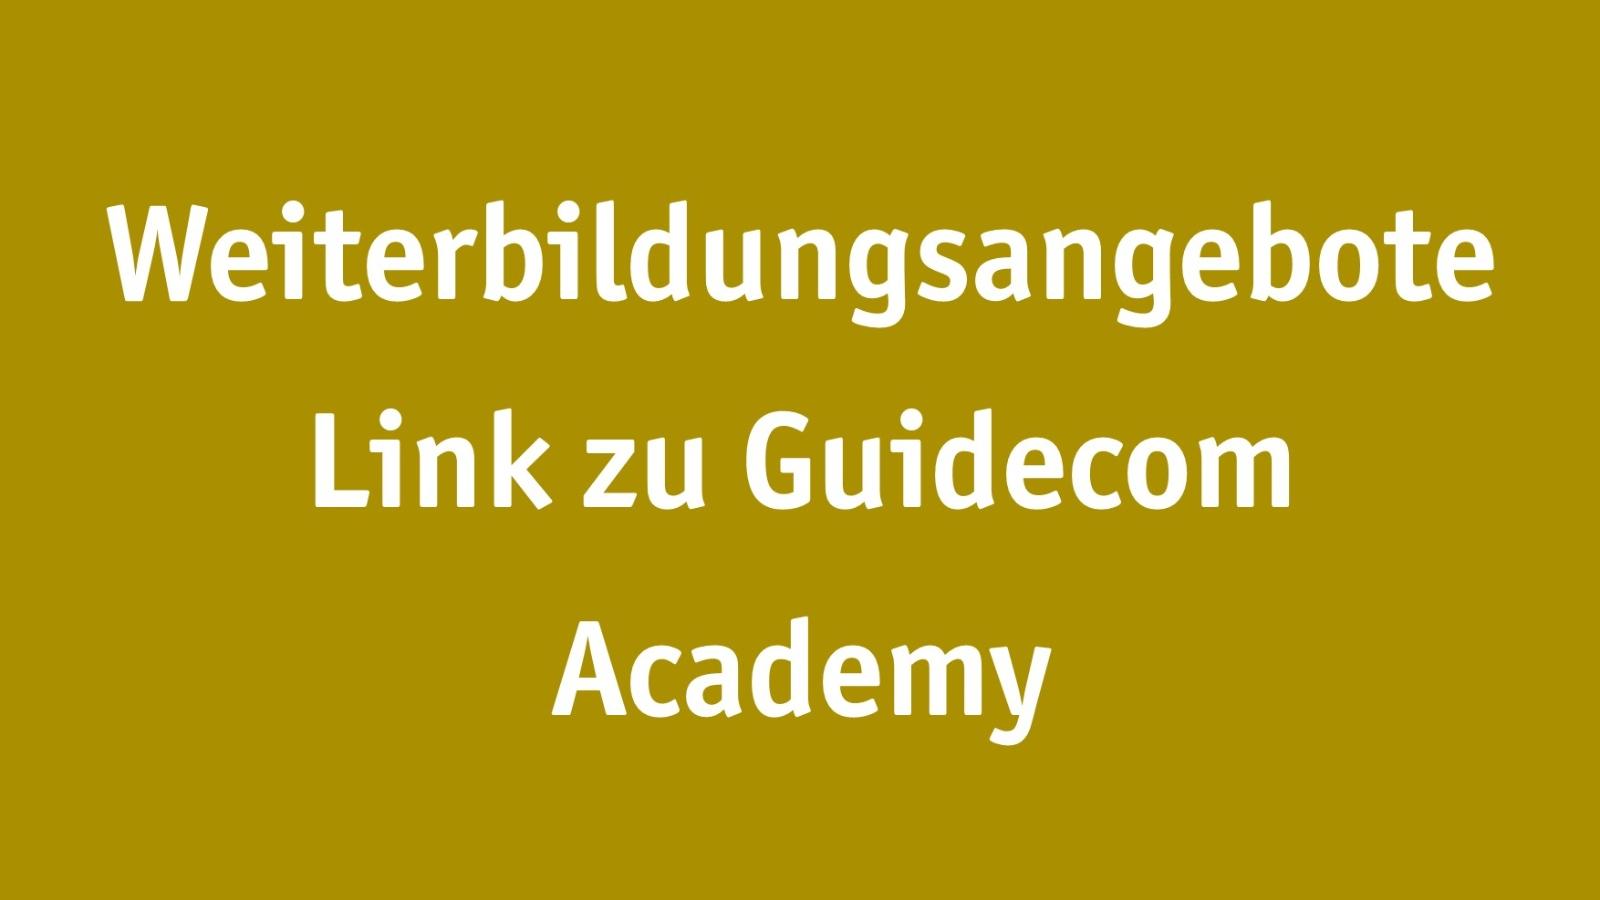 Guidecom Academy